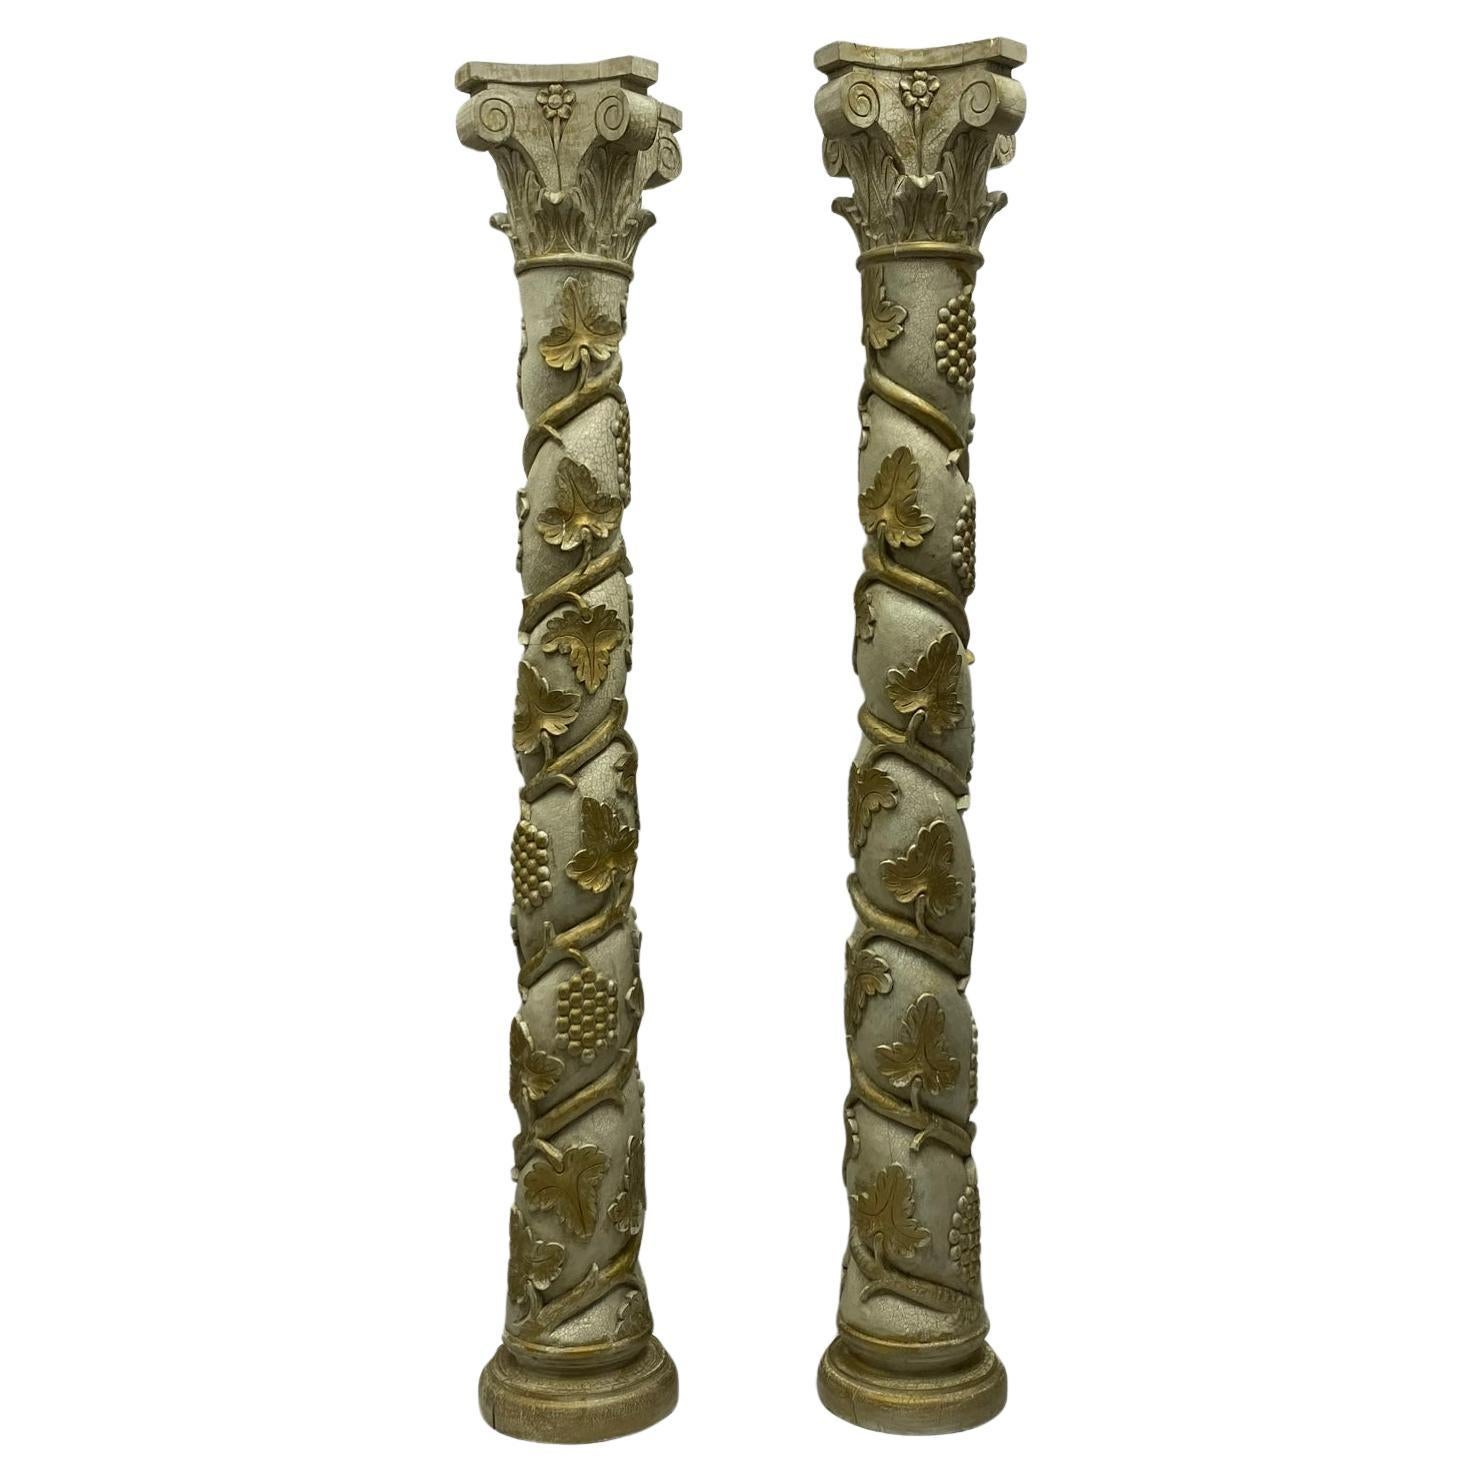 Es handelt sich um eine monumentale Säule im italienischen neoklassizistischen Stil mit geschnitzten und bemalten Säulen, die mit Weintrauben und Weinstöcken verziert sind. Sie sind wahrscheinlich Stücke aus der Mitte des Jahrhunderts und haben